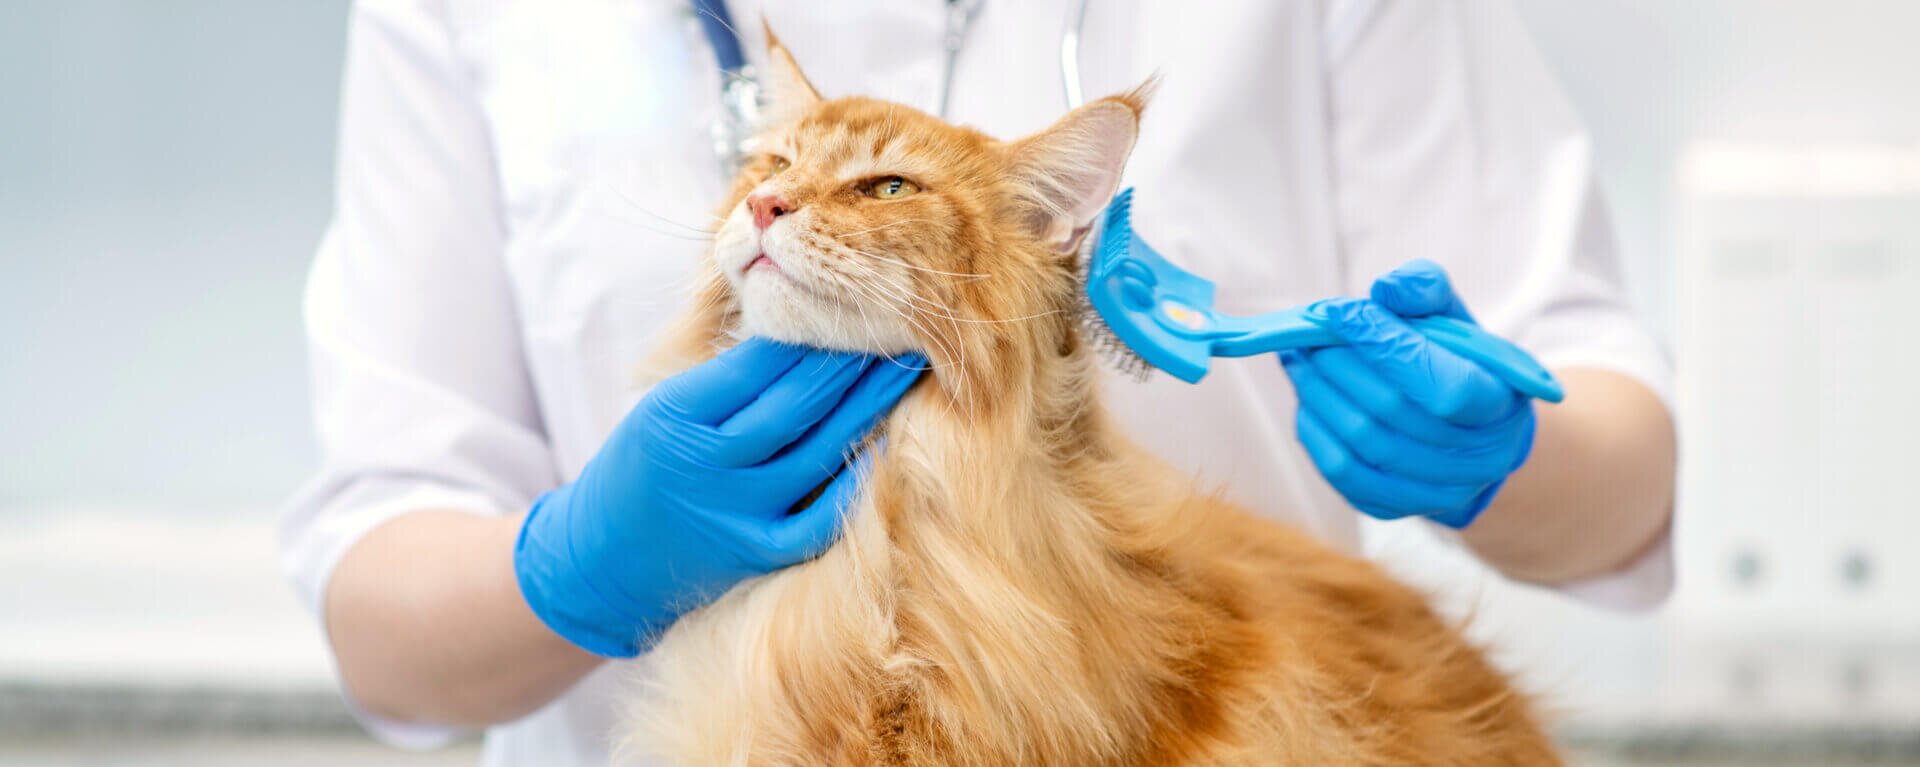 Шерсть в желудке у кошки, что делать и как ее вывести из желудка